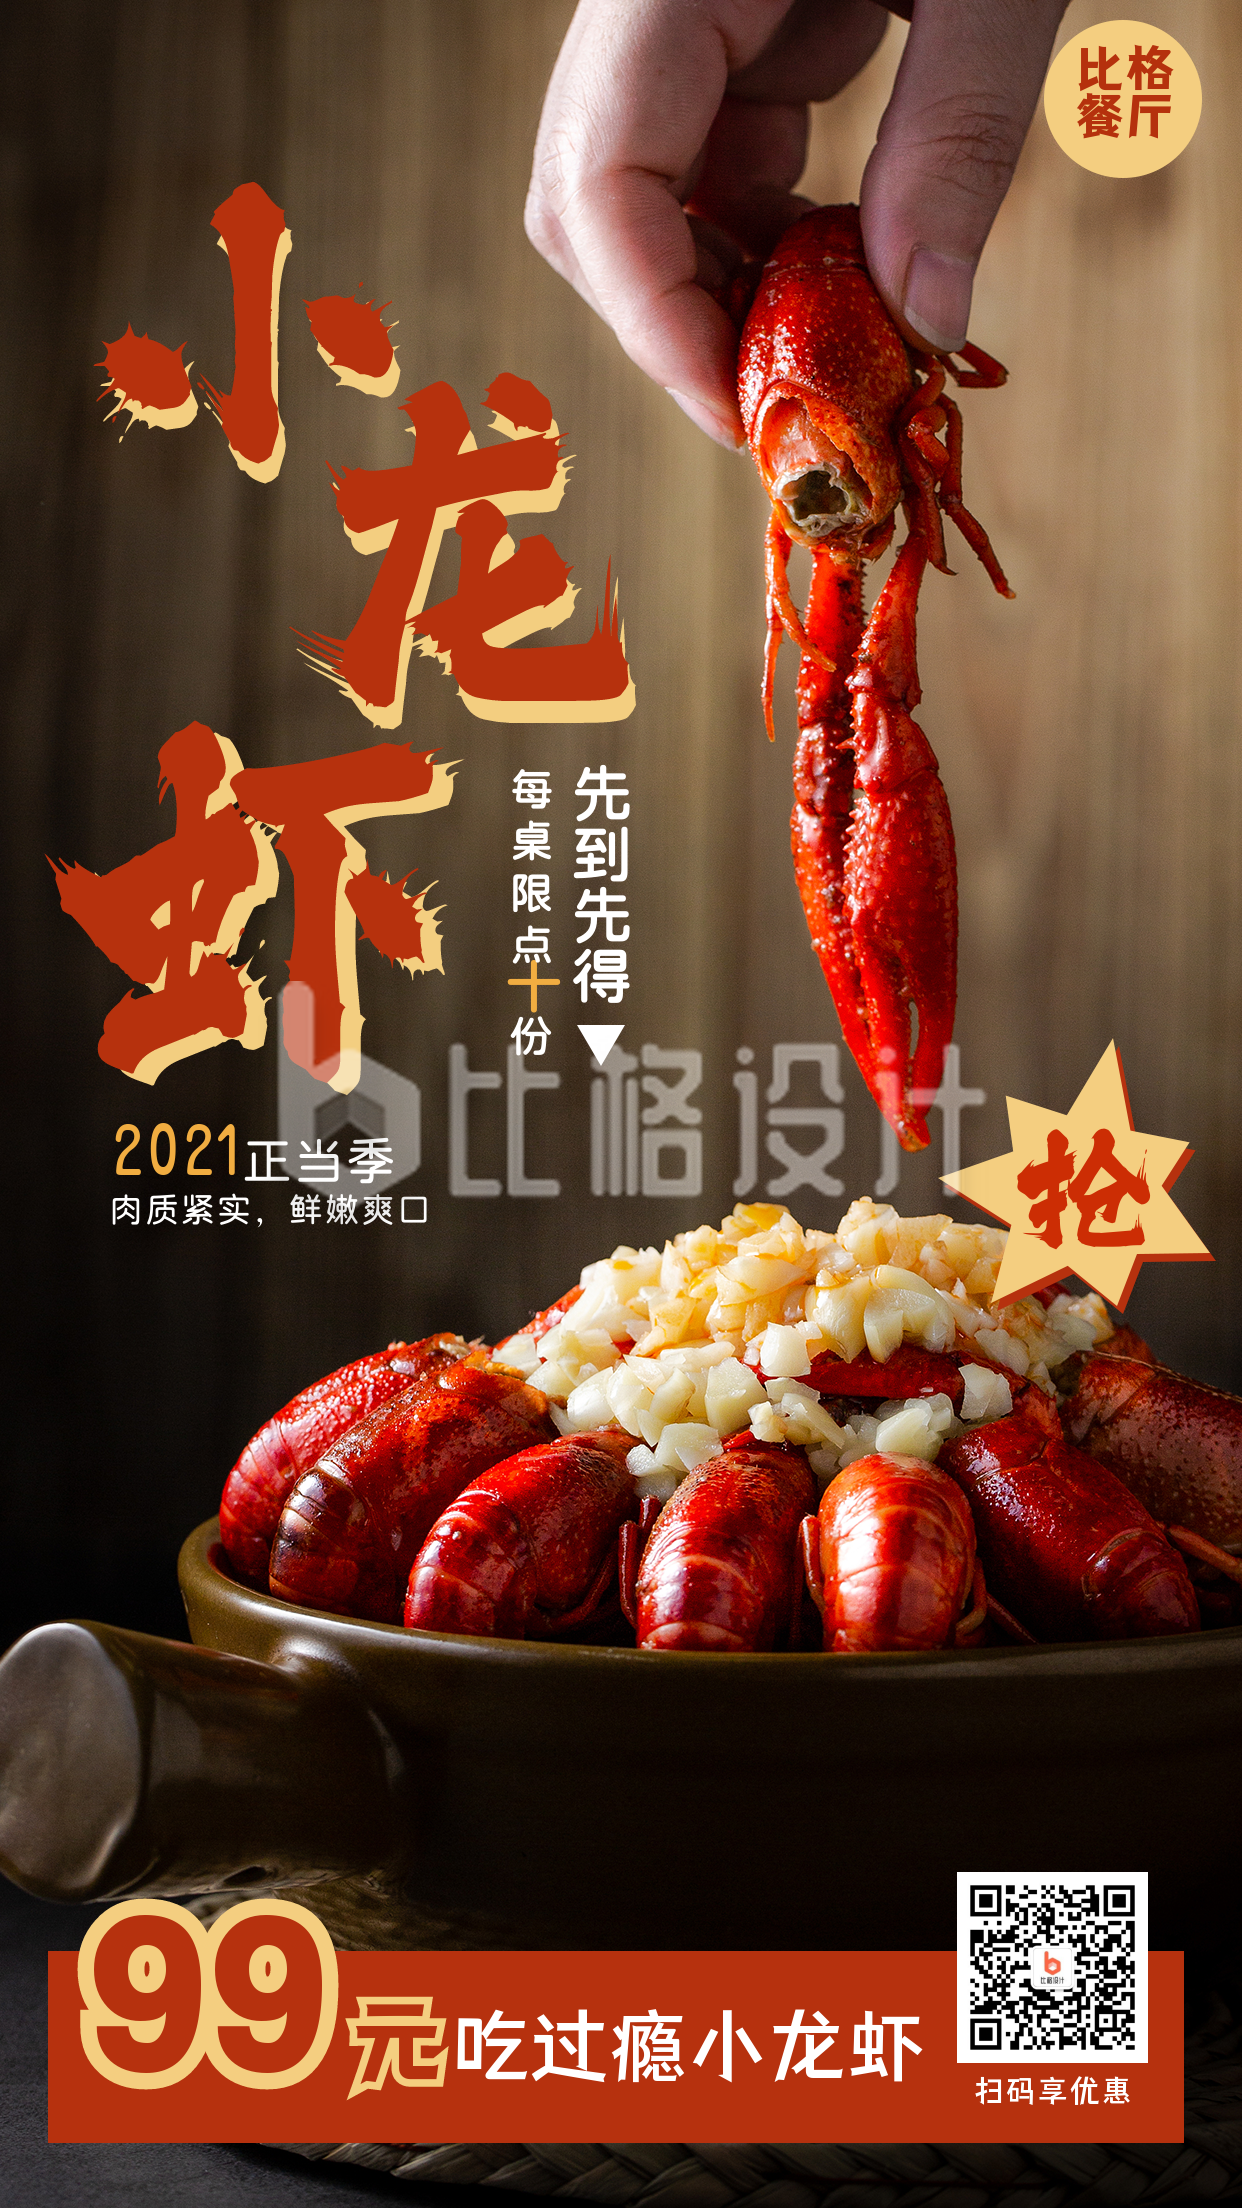 小龙虾美食抢购营销活动宣传海报